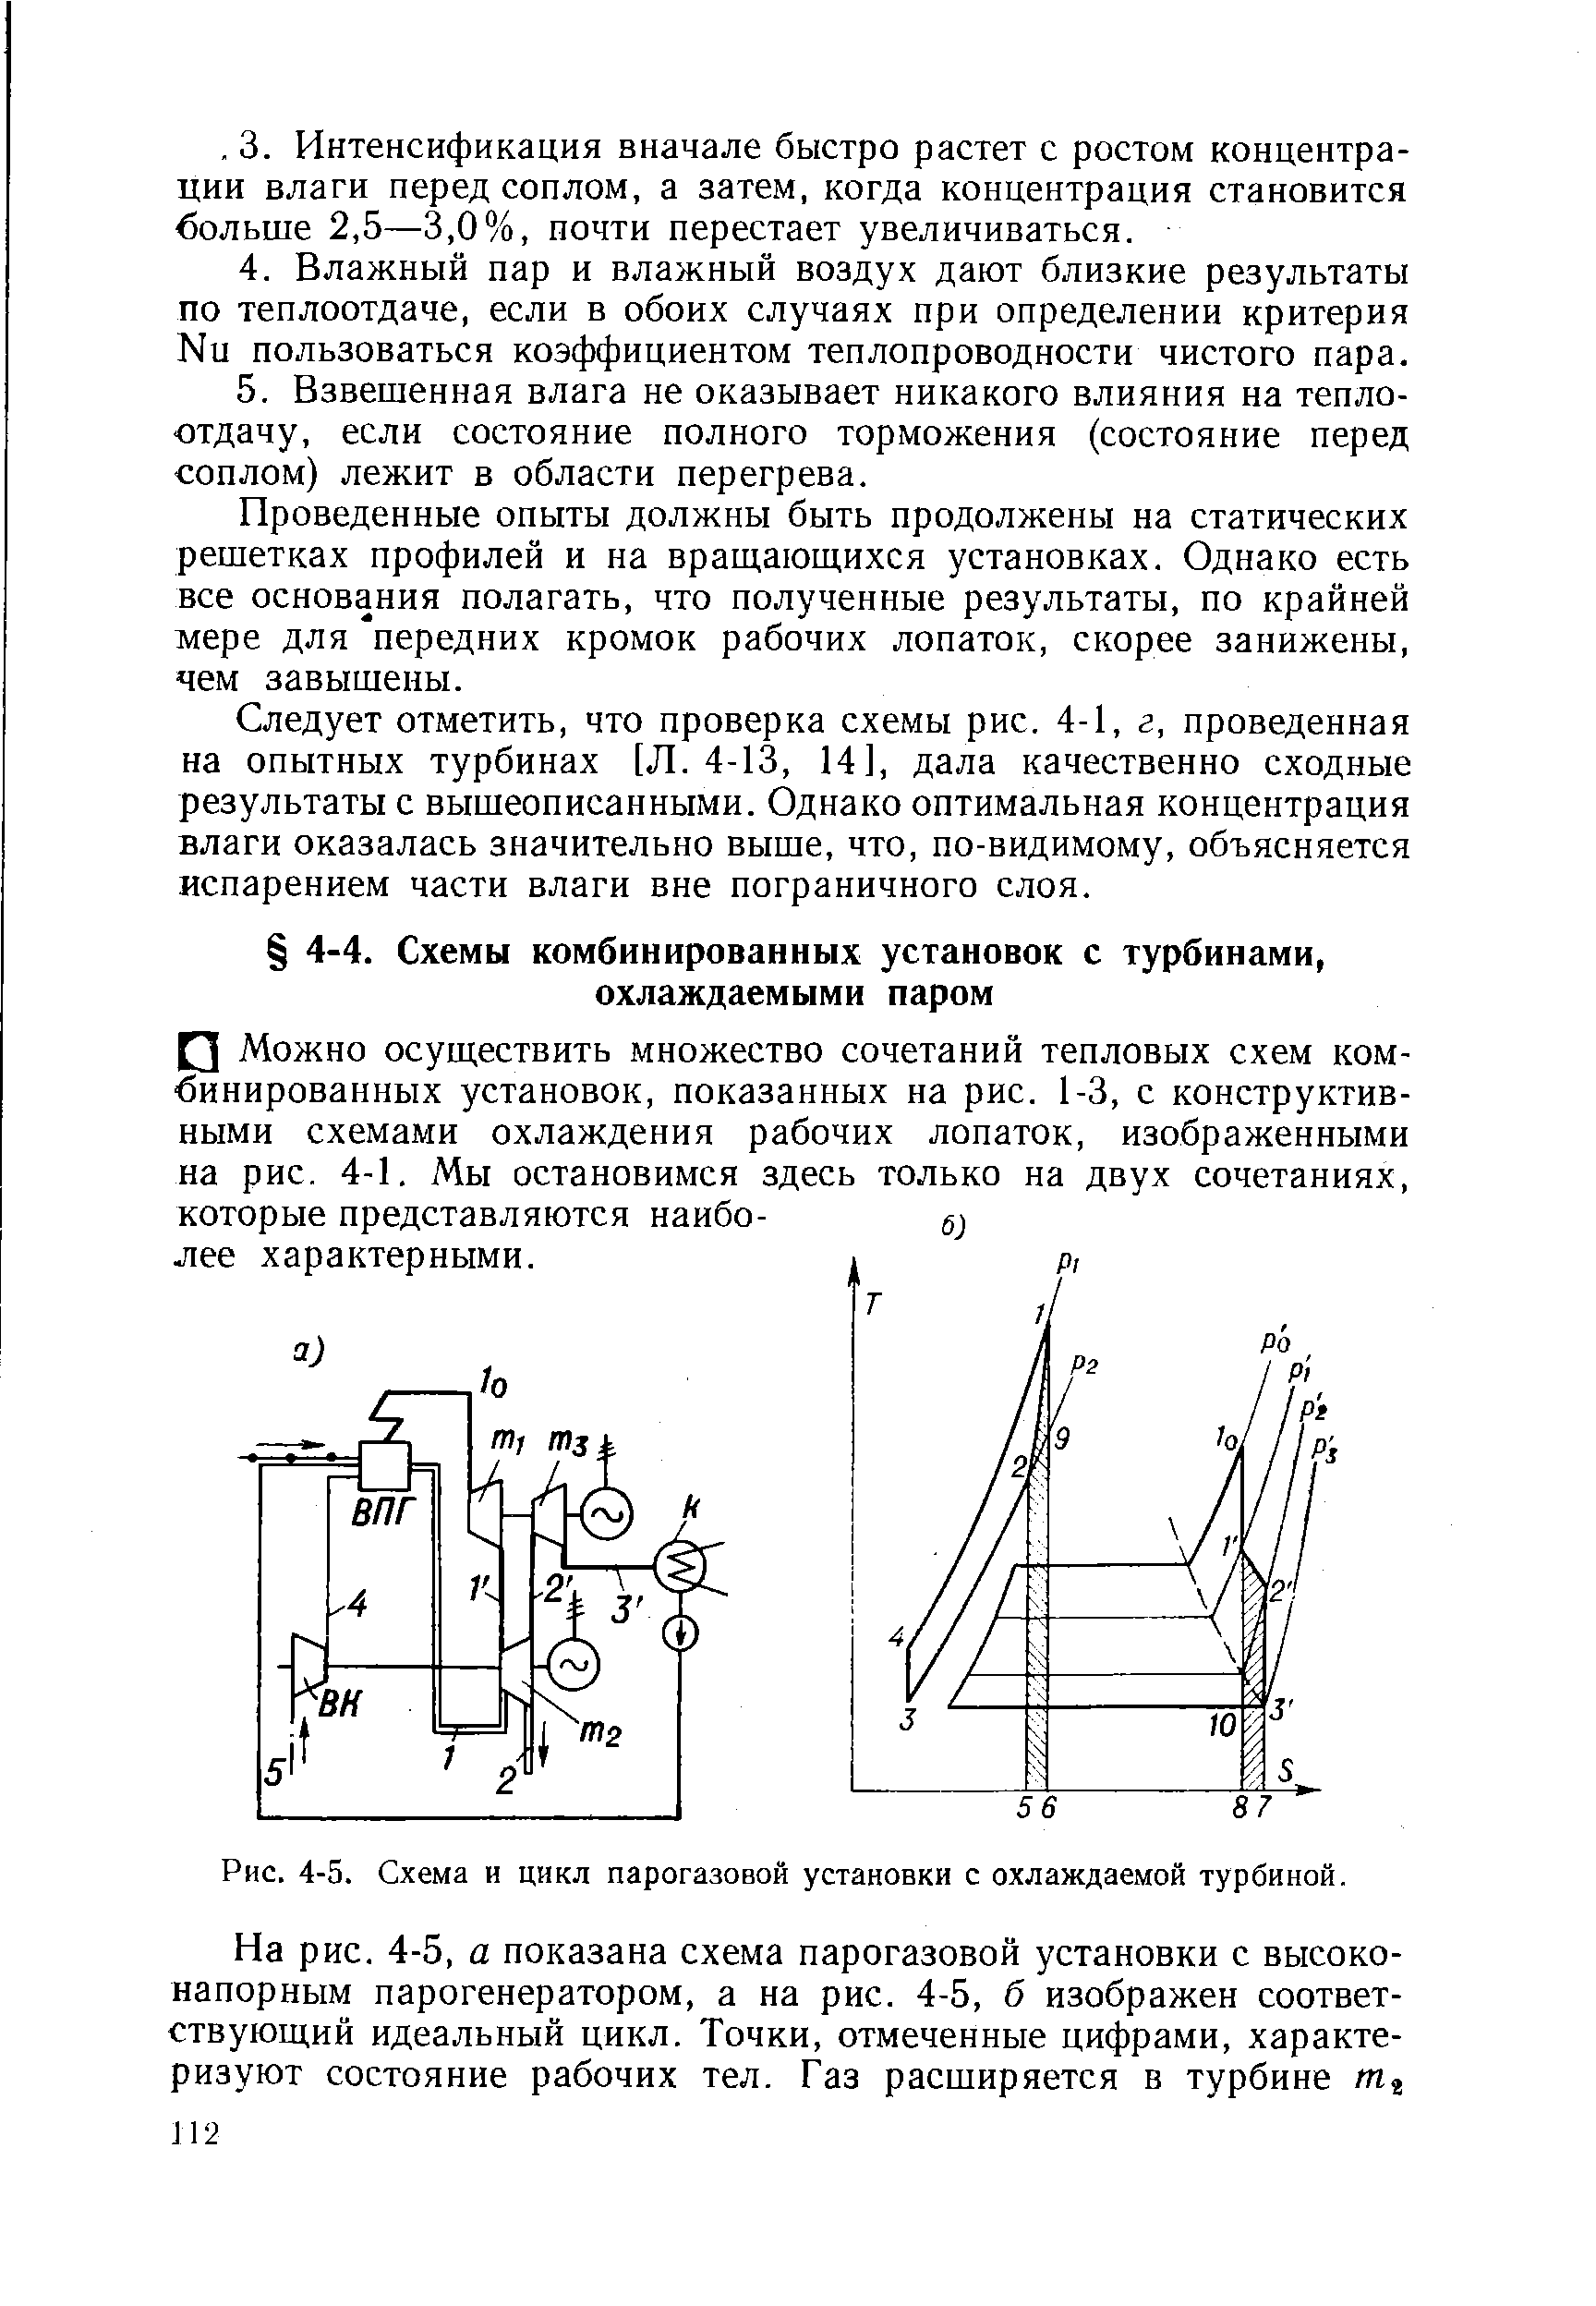 Рис. 4-5. Схема и цикл парогазовой установки с охлаждаемой турбиной.
